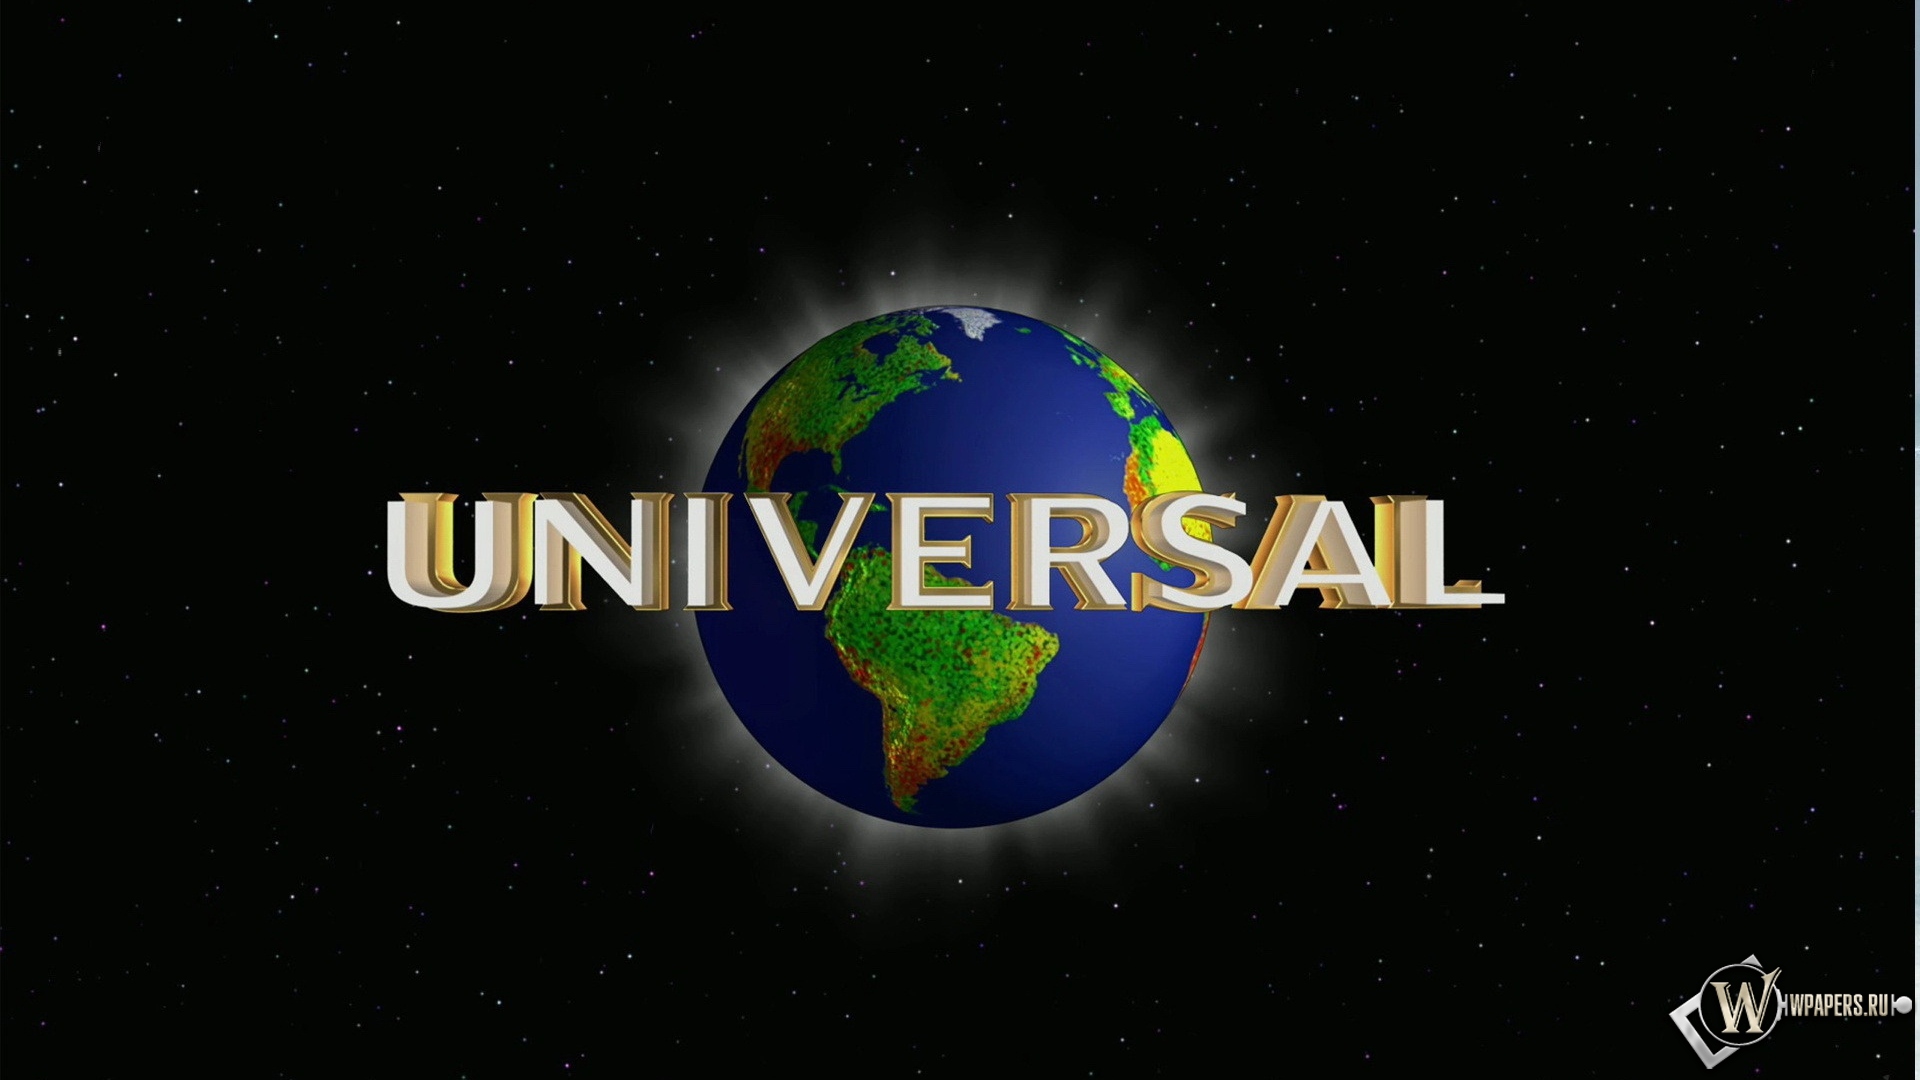 Логотип Universal Pictures 1920x1080